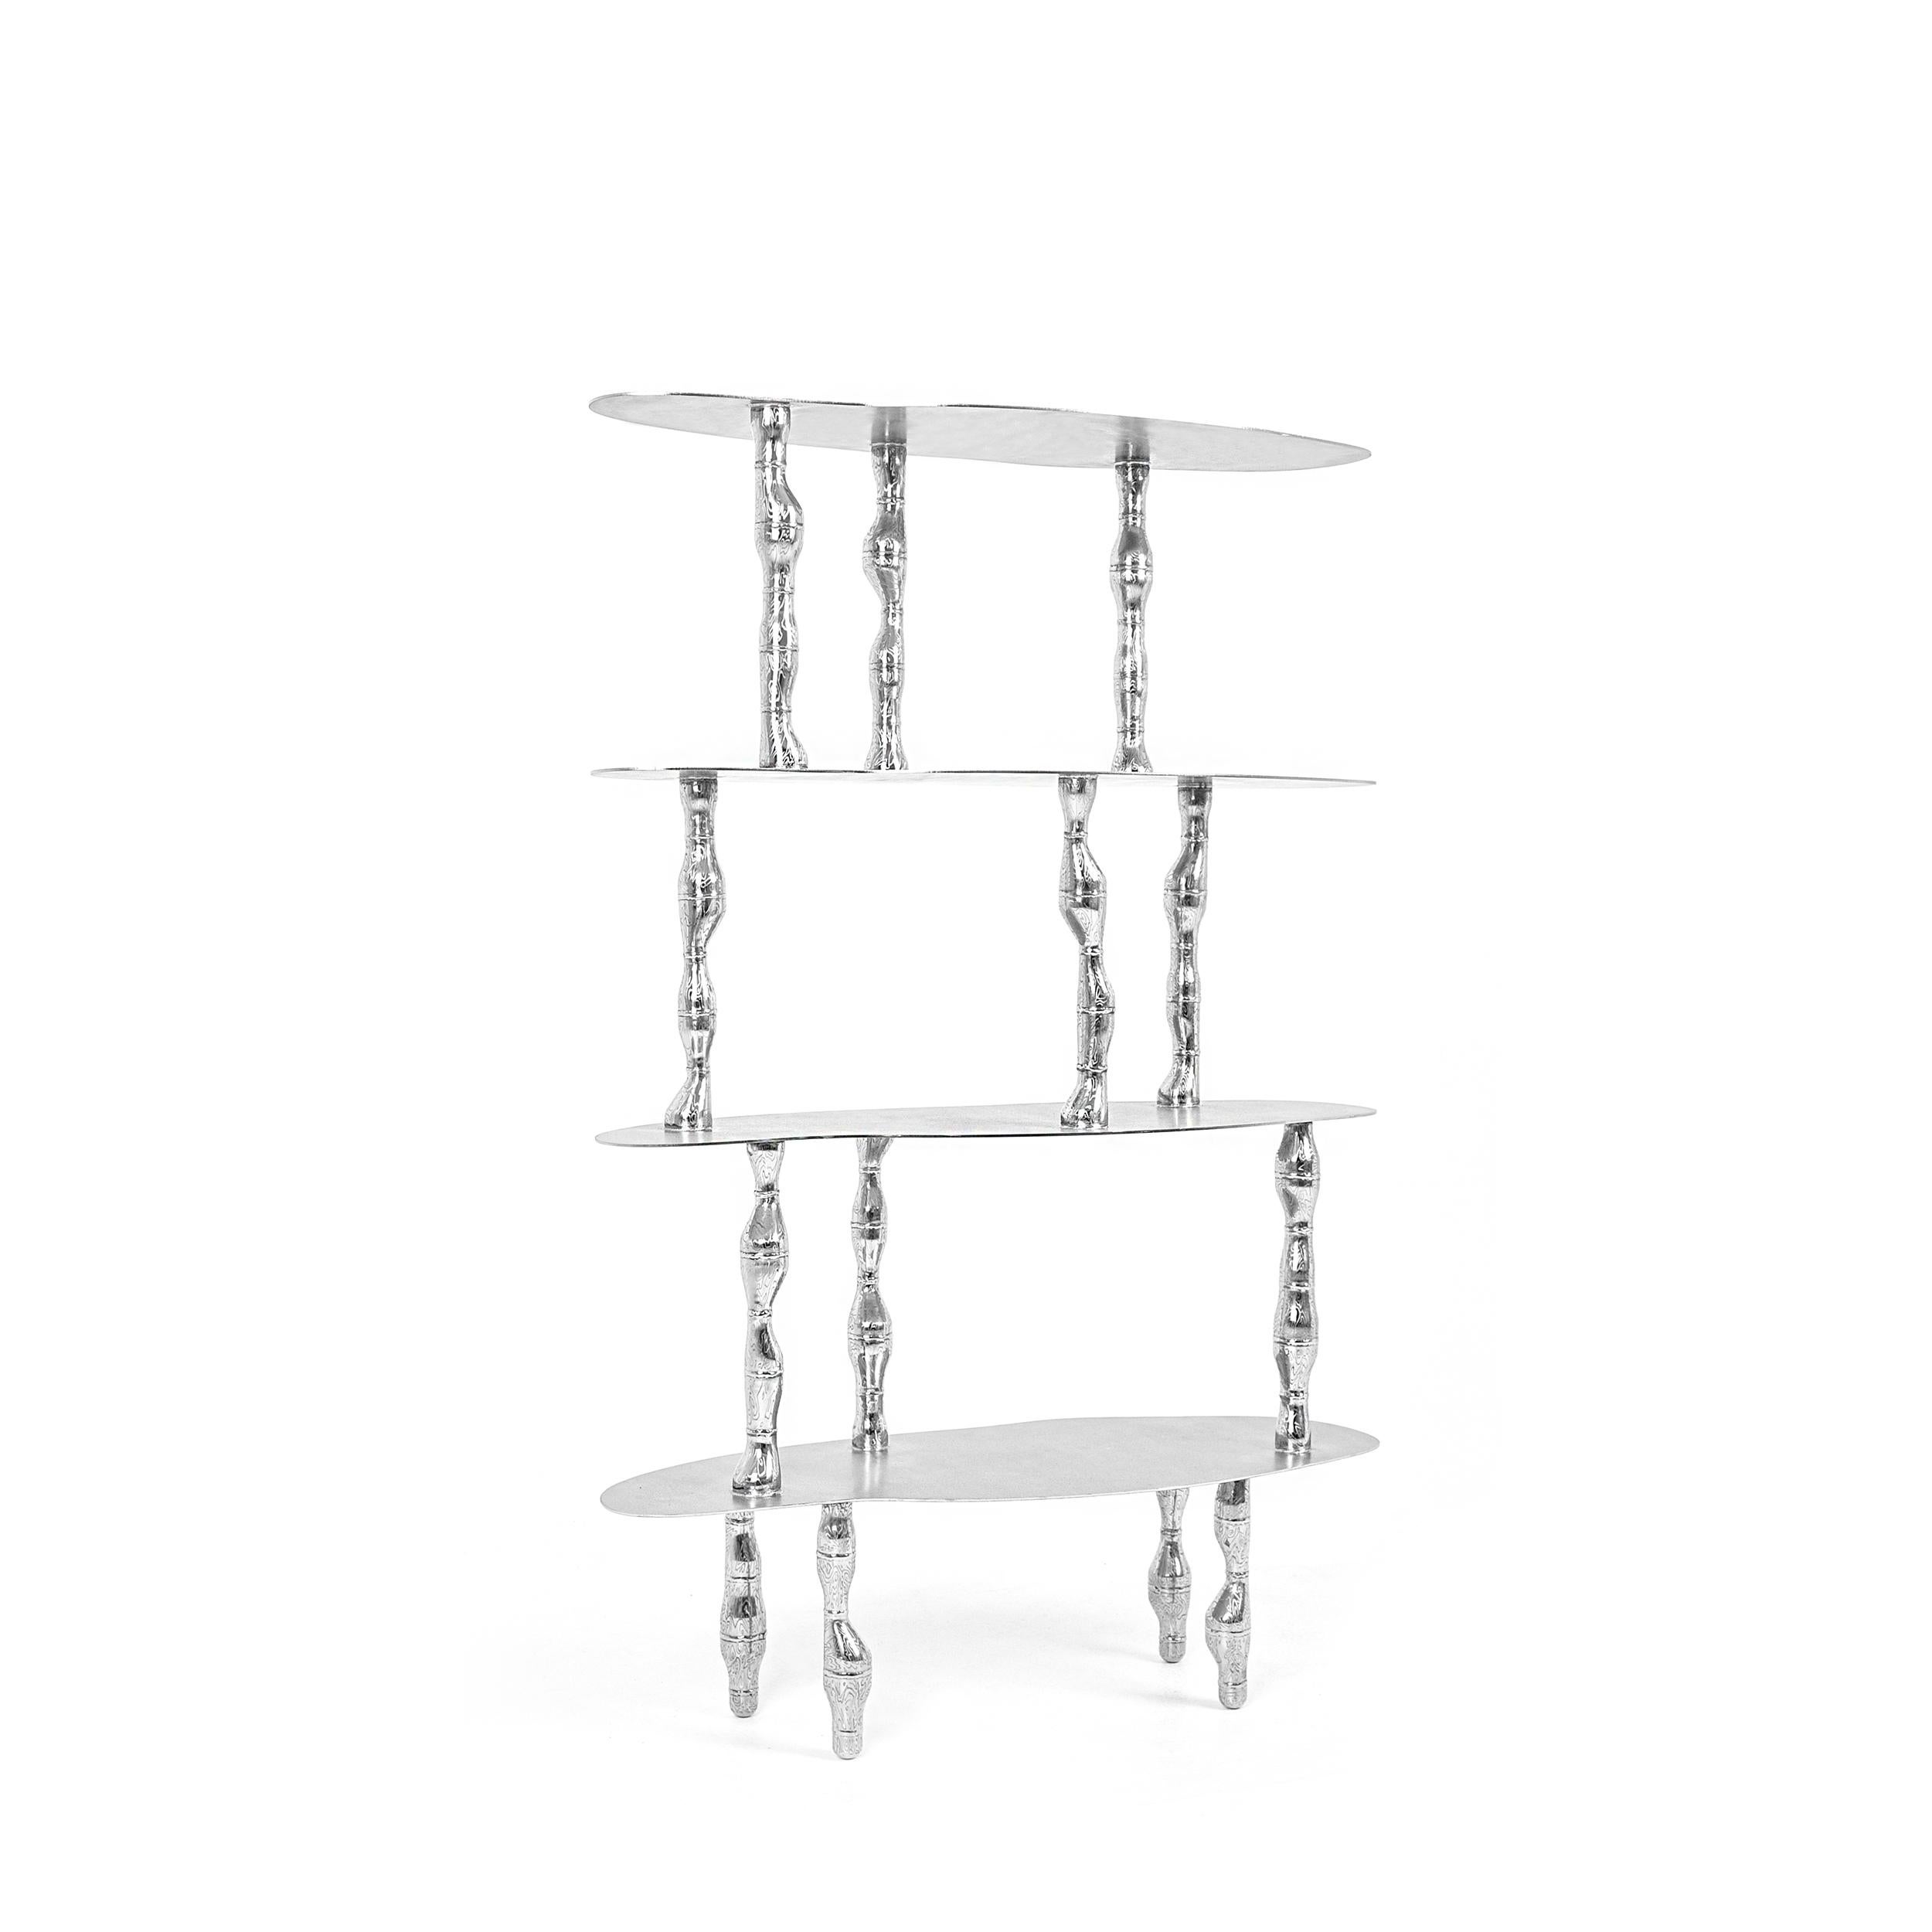 Pipe Fitting Shelves by Hyungjun Lee
Dimensions: D 77 x W 30 x H 116cm.
Materials: Stainless steel.


Hyungjun Lee

EDUCATION
2015-2018     ESAD Orléans / Objet & Espace
                      École supérieure d'art de design d’Orléans /